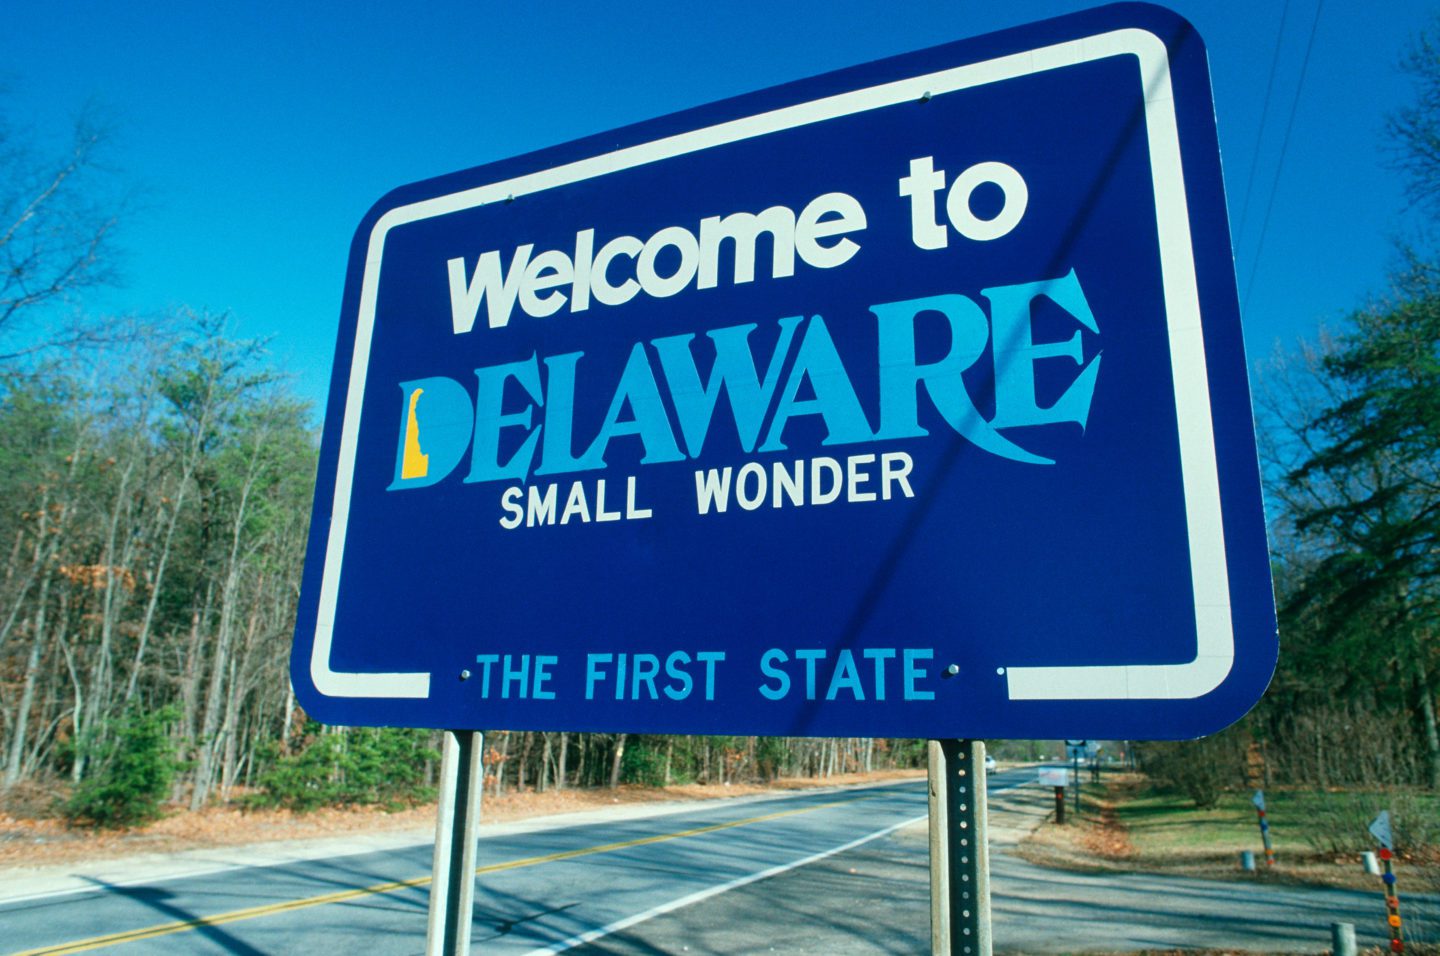 Delaware travel guide